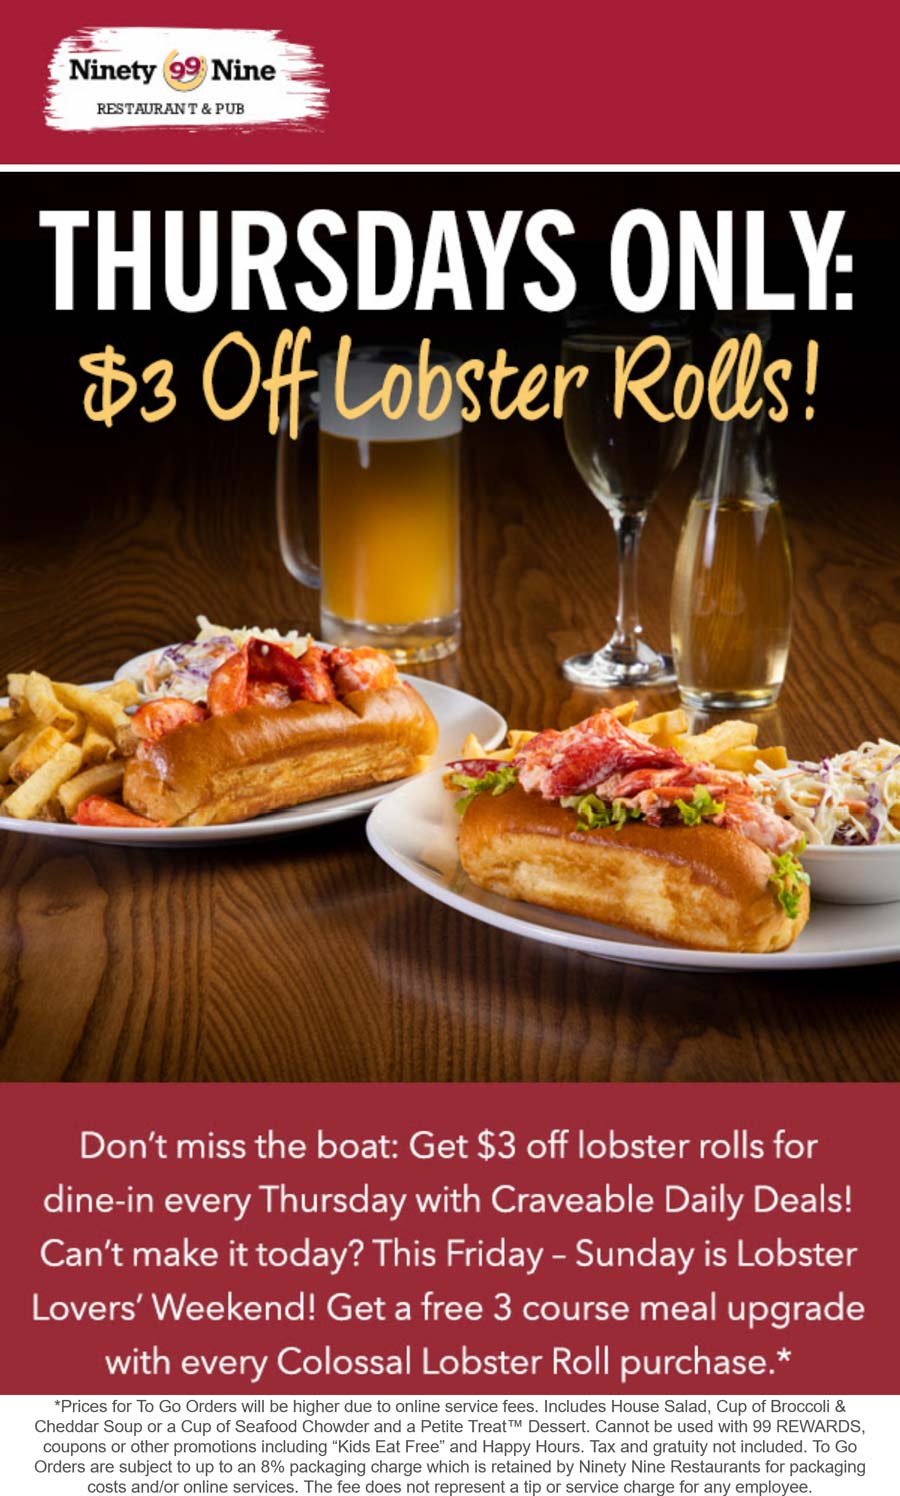 99 Restaurants restaurants Coupon  $3 off lobster rolls today at 99 Restaurants #99restaurants 